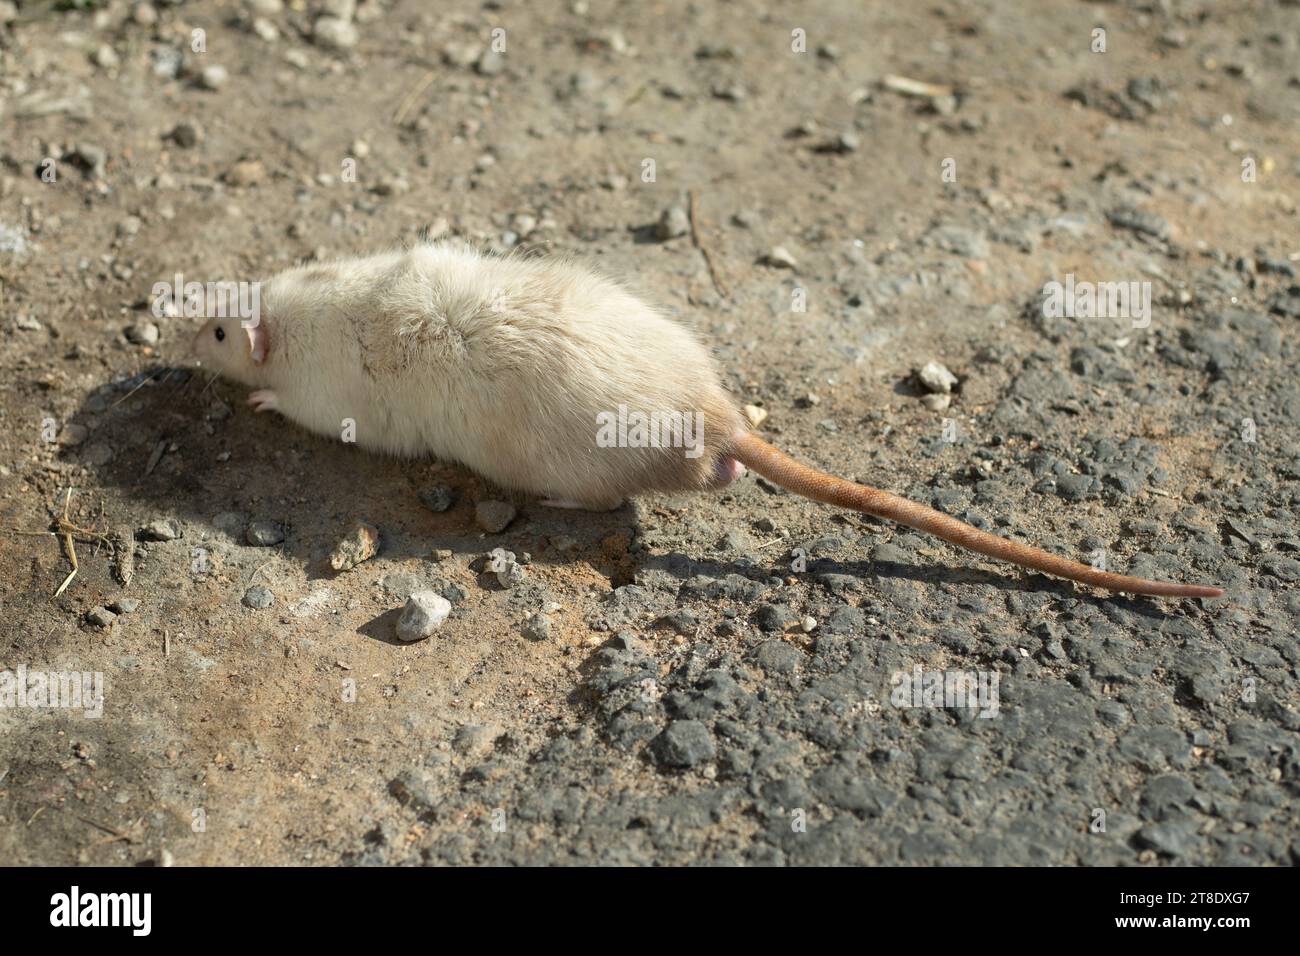 White rat running on asphalt. Rat on the street. The pet ran away. Stock Photo